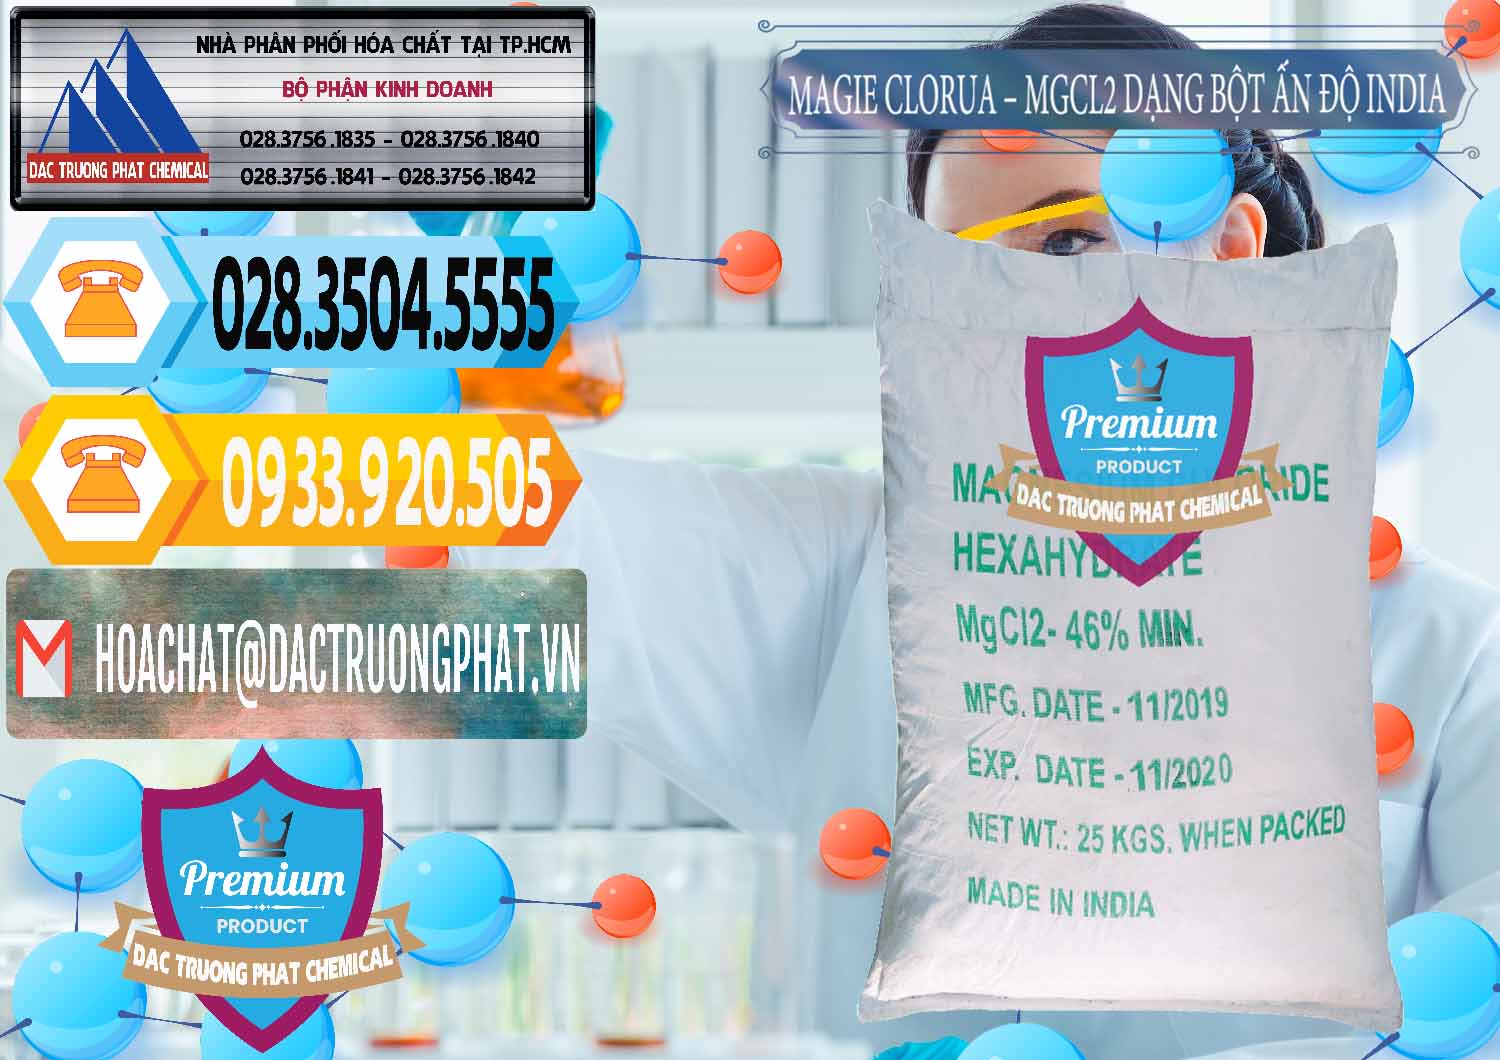 Cty chuyên nhập khẩu ( bán ) Magie Clorua – MGCL2 96% Dạng Bột Ấn Độ India - 0206 - Cty chuyên bán & cung cấp hóa chất tại TP.HCM - hoachattayrua.net